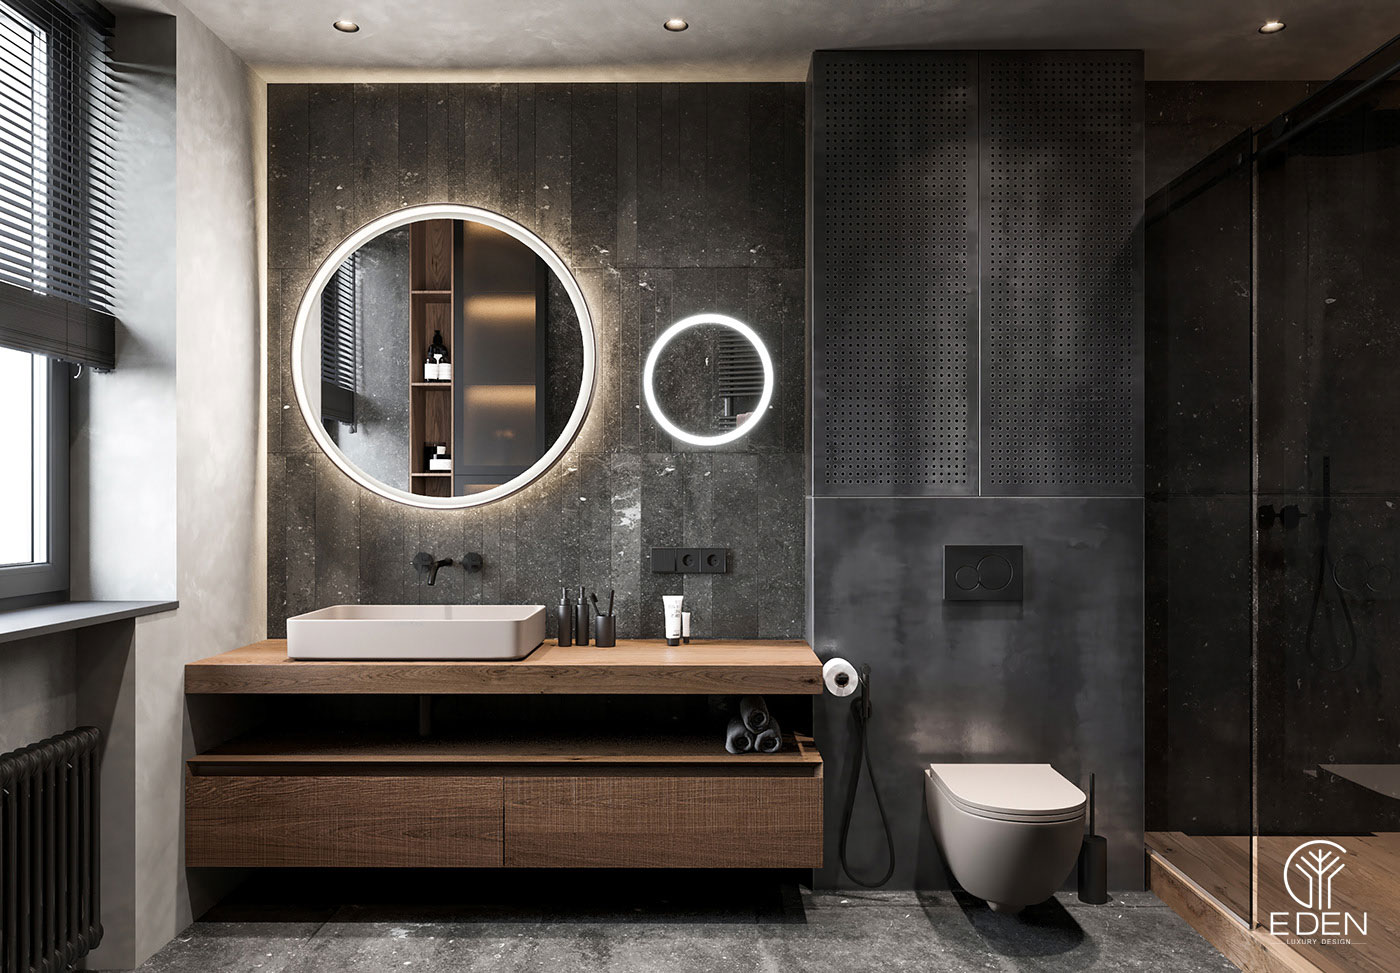 Thiết kế, kiểu phòng tắm tiện nghi được ưa chuộng nhiều nhất năm 2022 - mẫu thứ 5